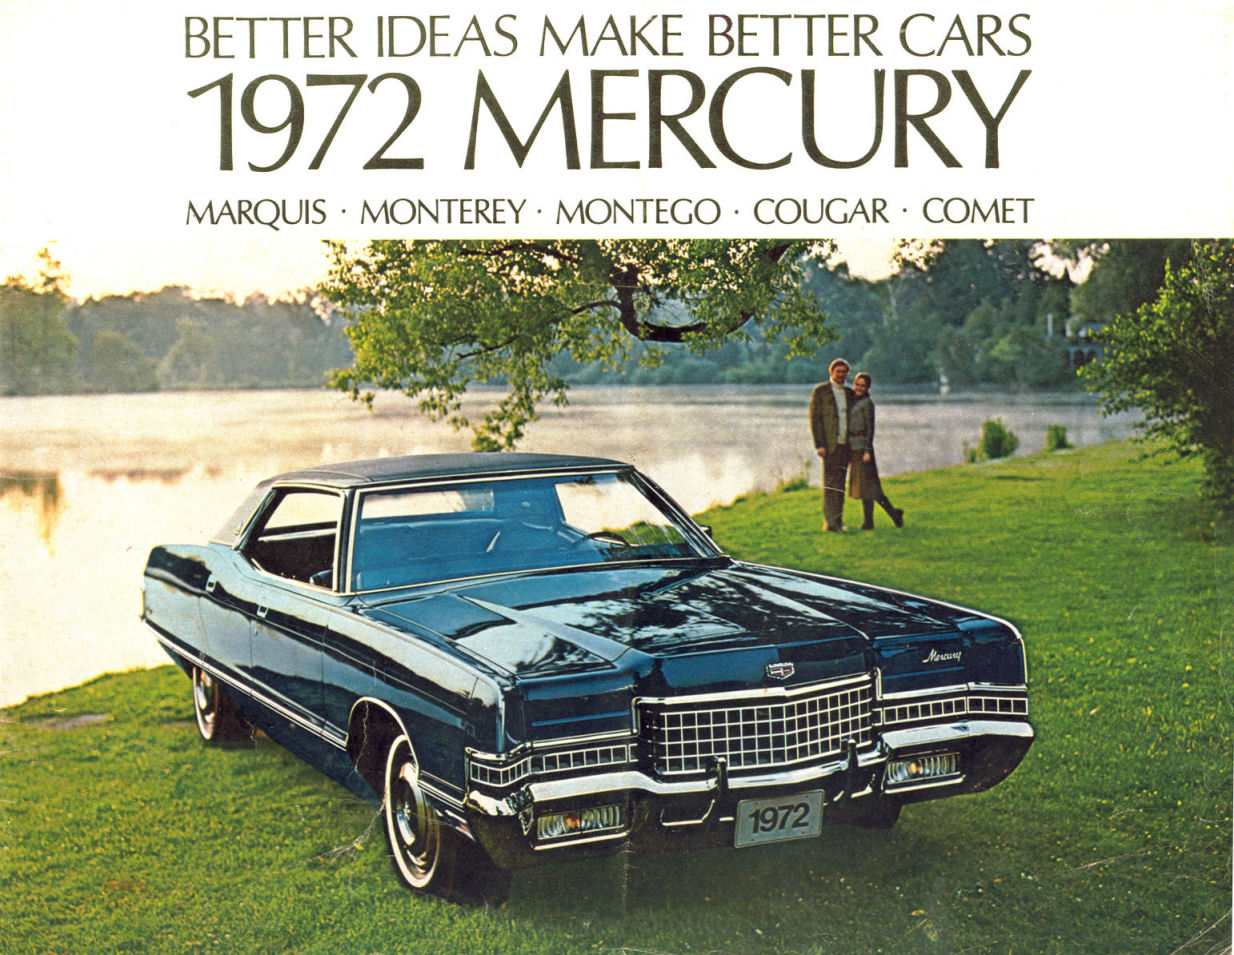 1972_Mercury-01